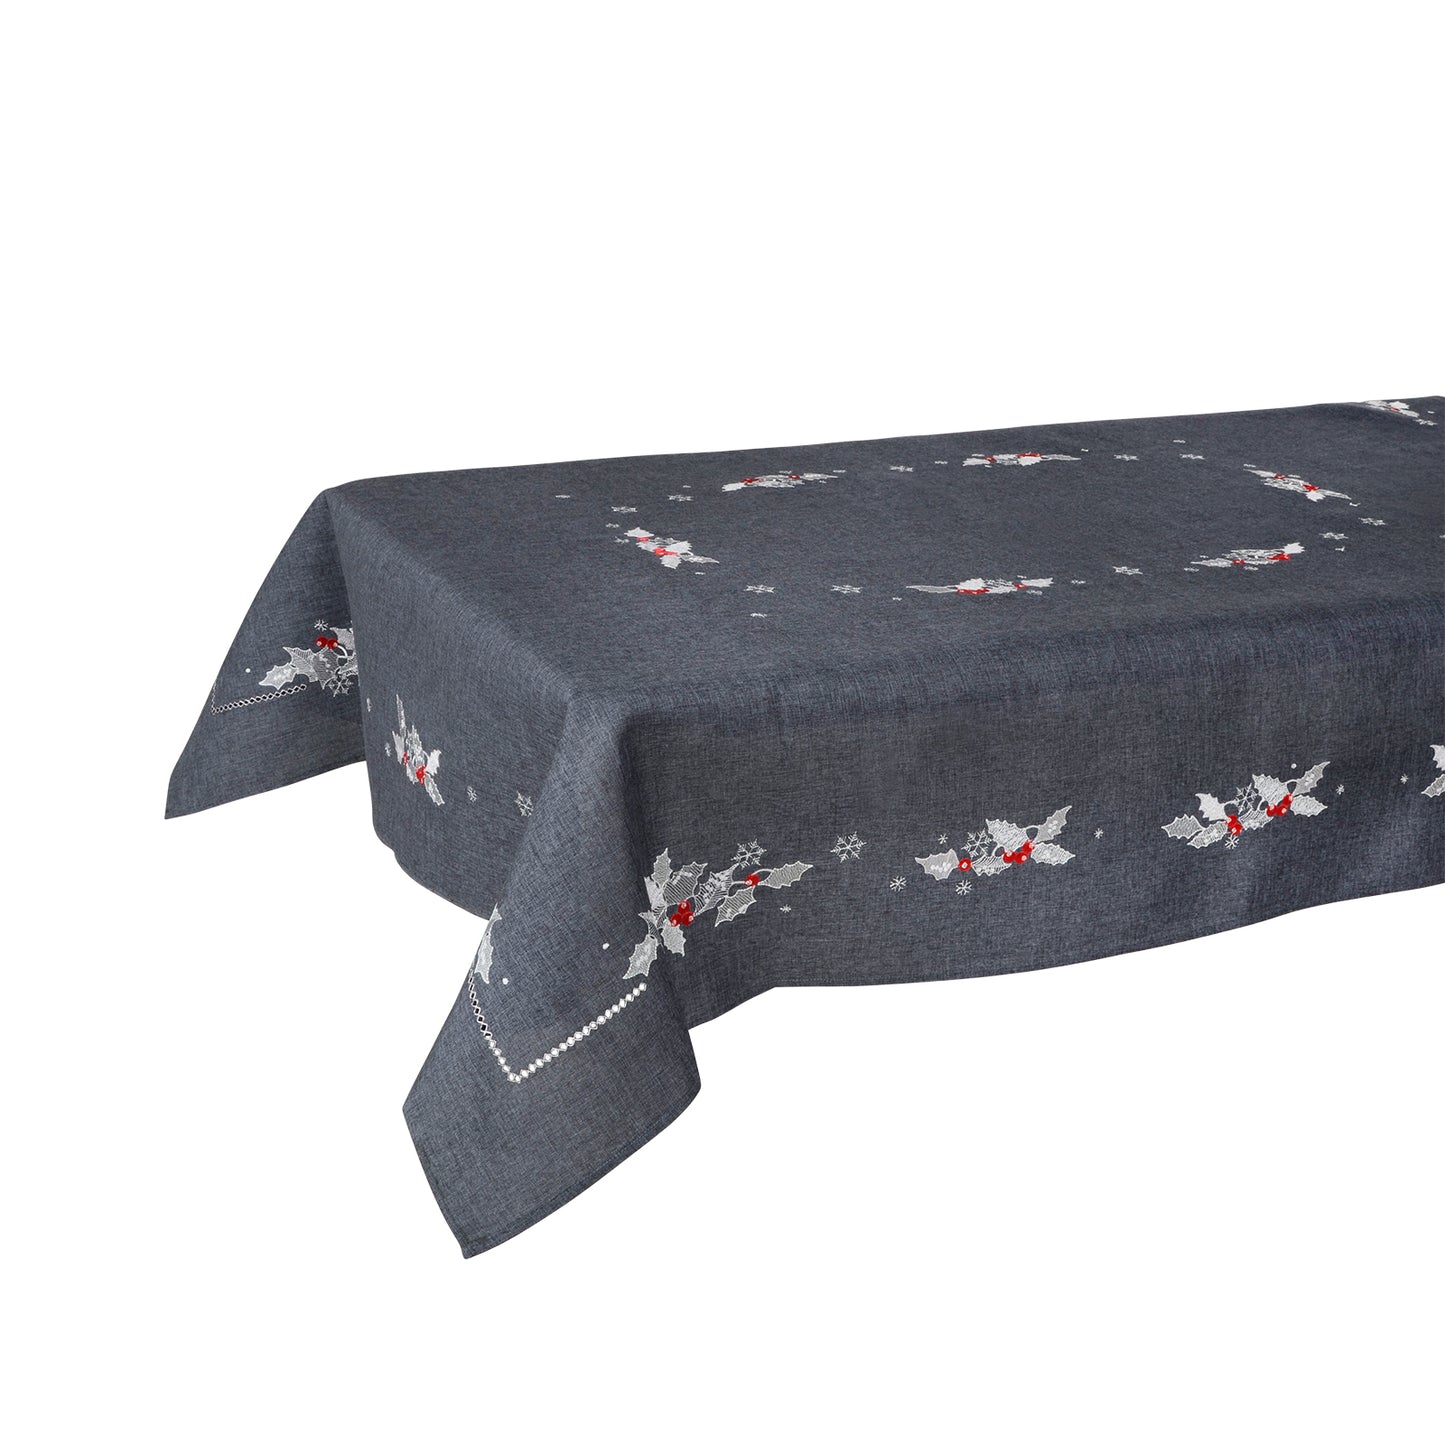 Mr Crimbo Holly & Berry Embroidered Tablecloth/Napkin - MrCrimbo.co.uk -XS5883 - Slate -christmas napkins